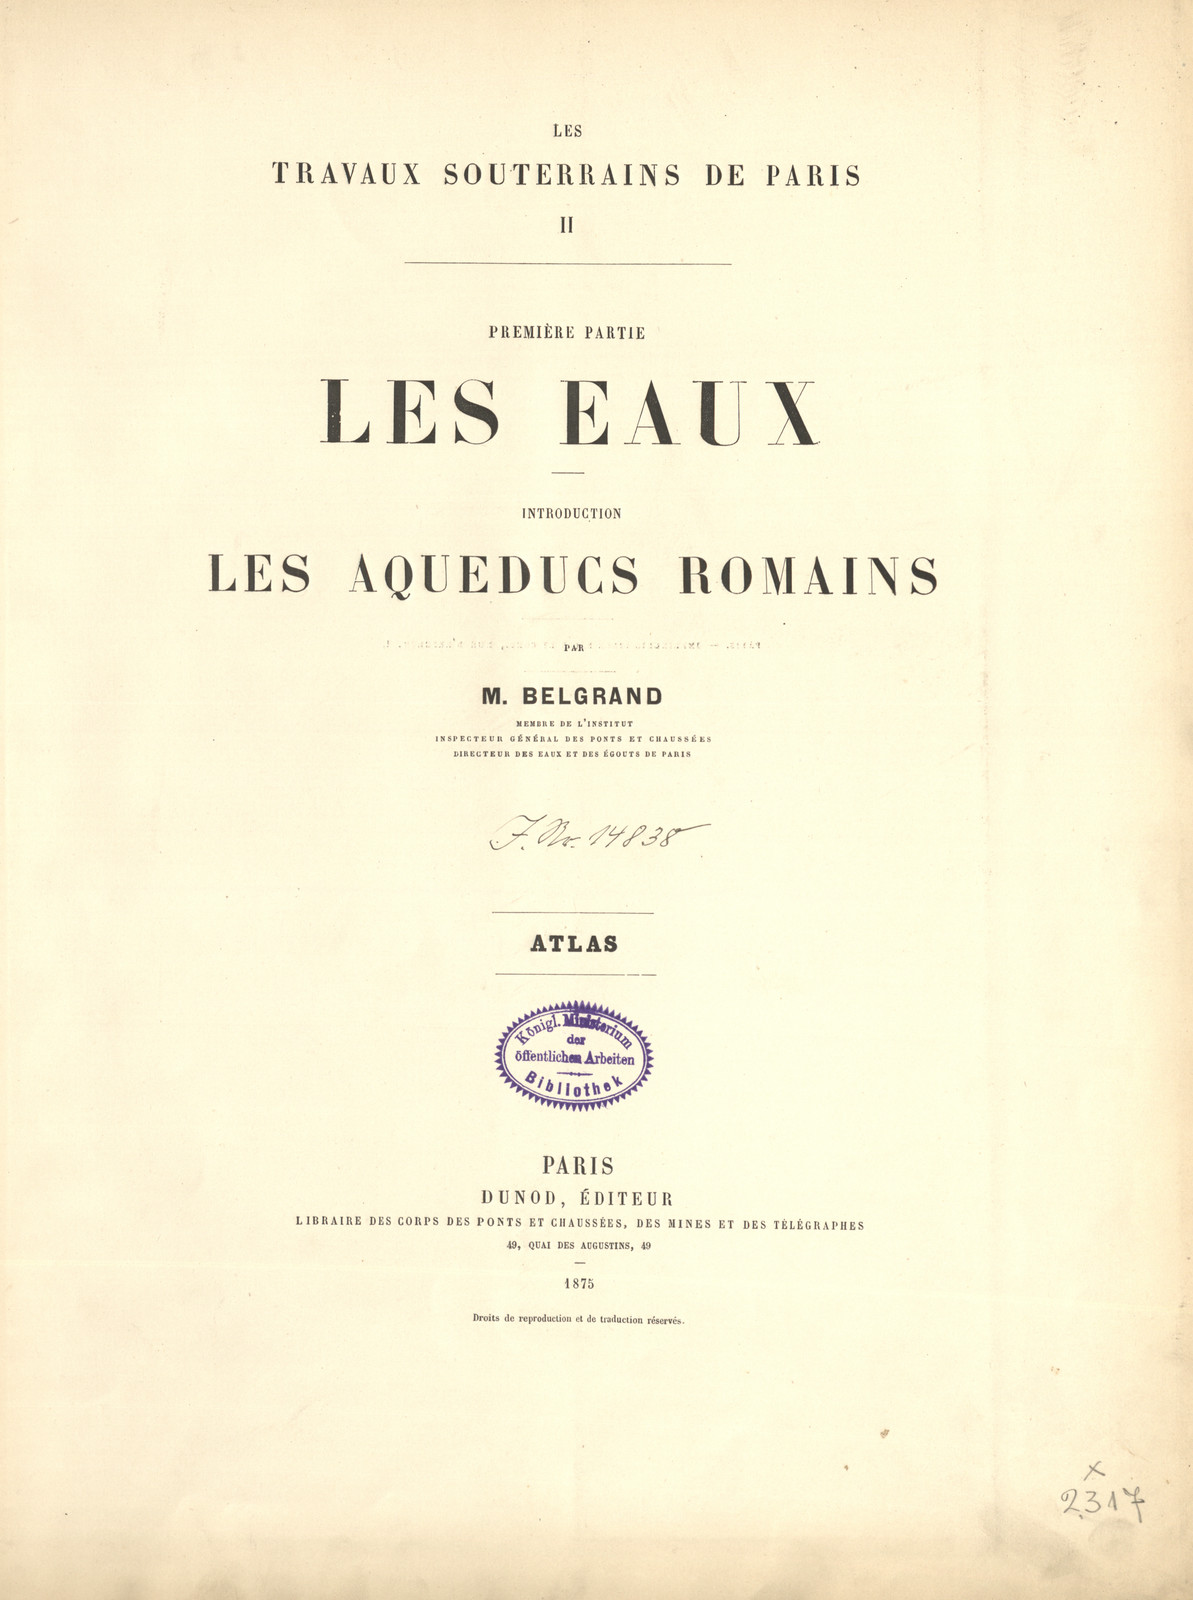 Les travaux souterrains de Paris : introduction : les aqueducs romains : atlas. 2, pt. 1, Les eaux